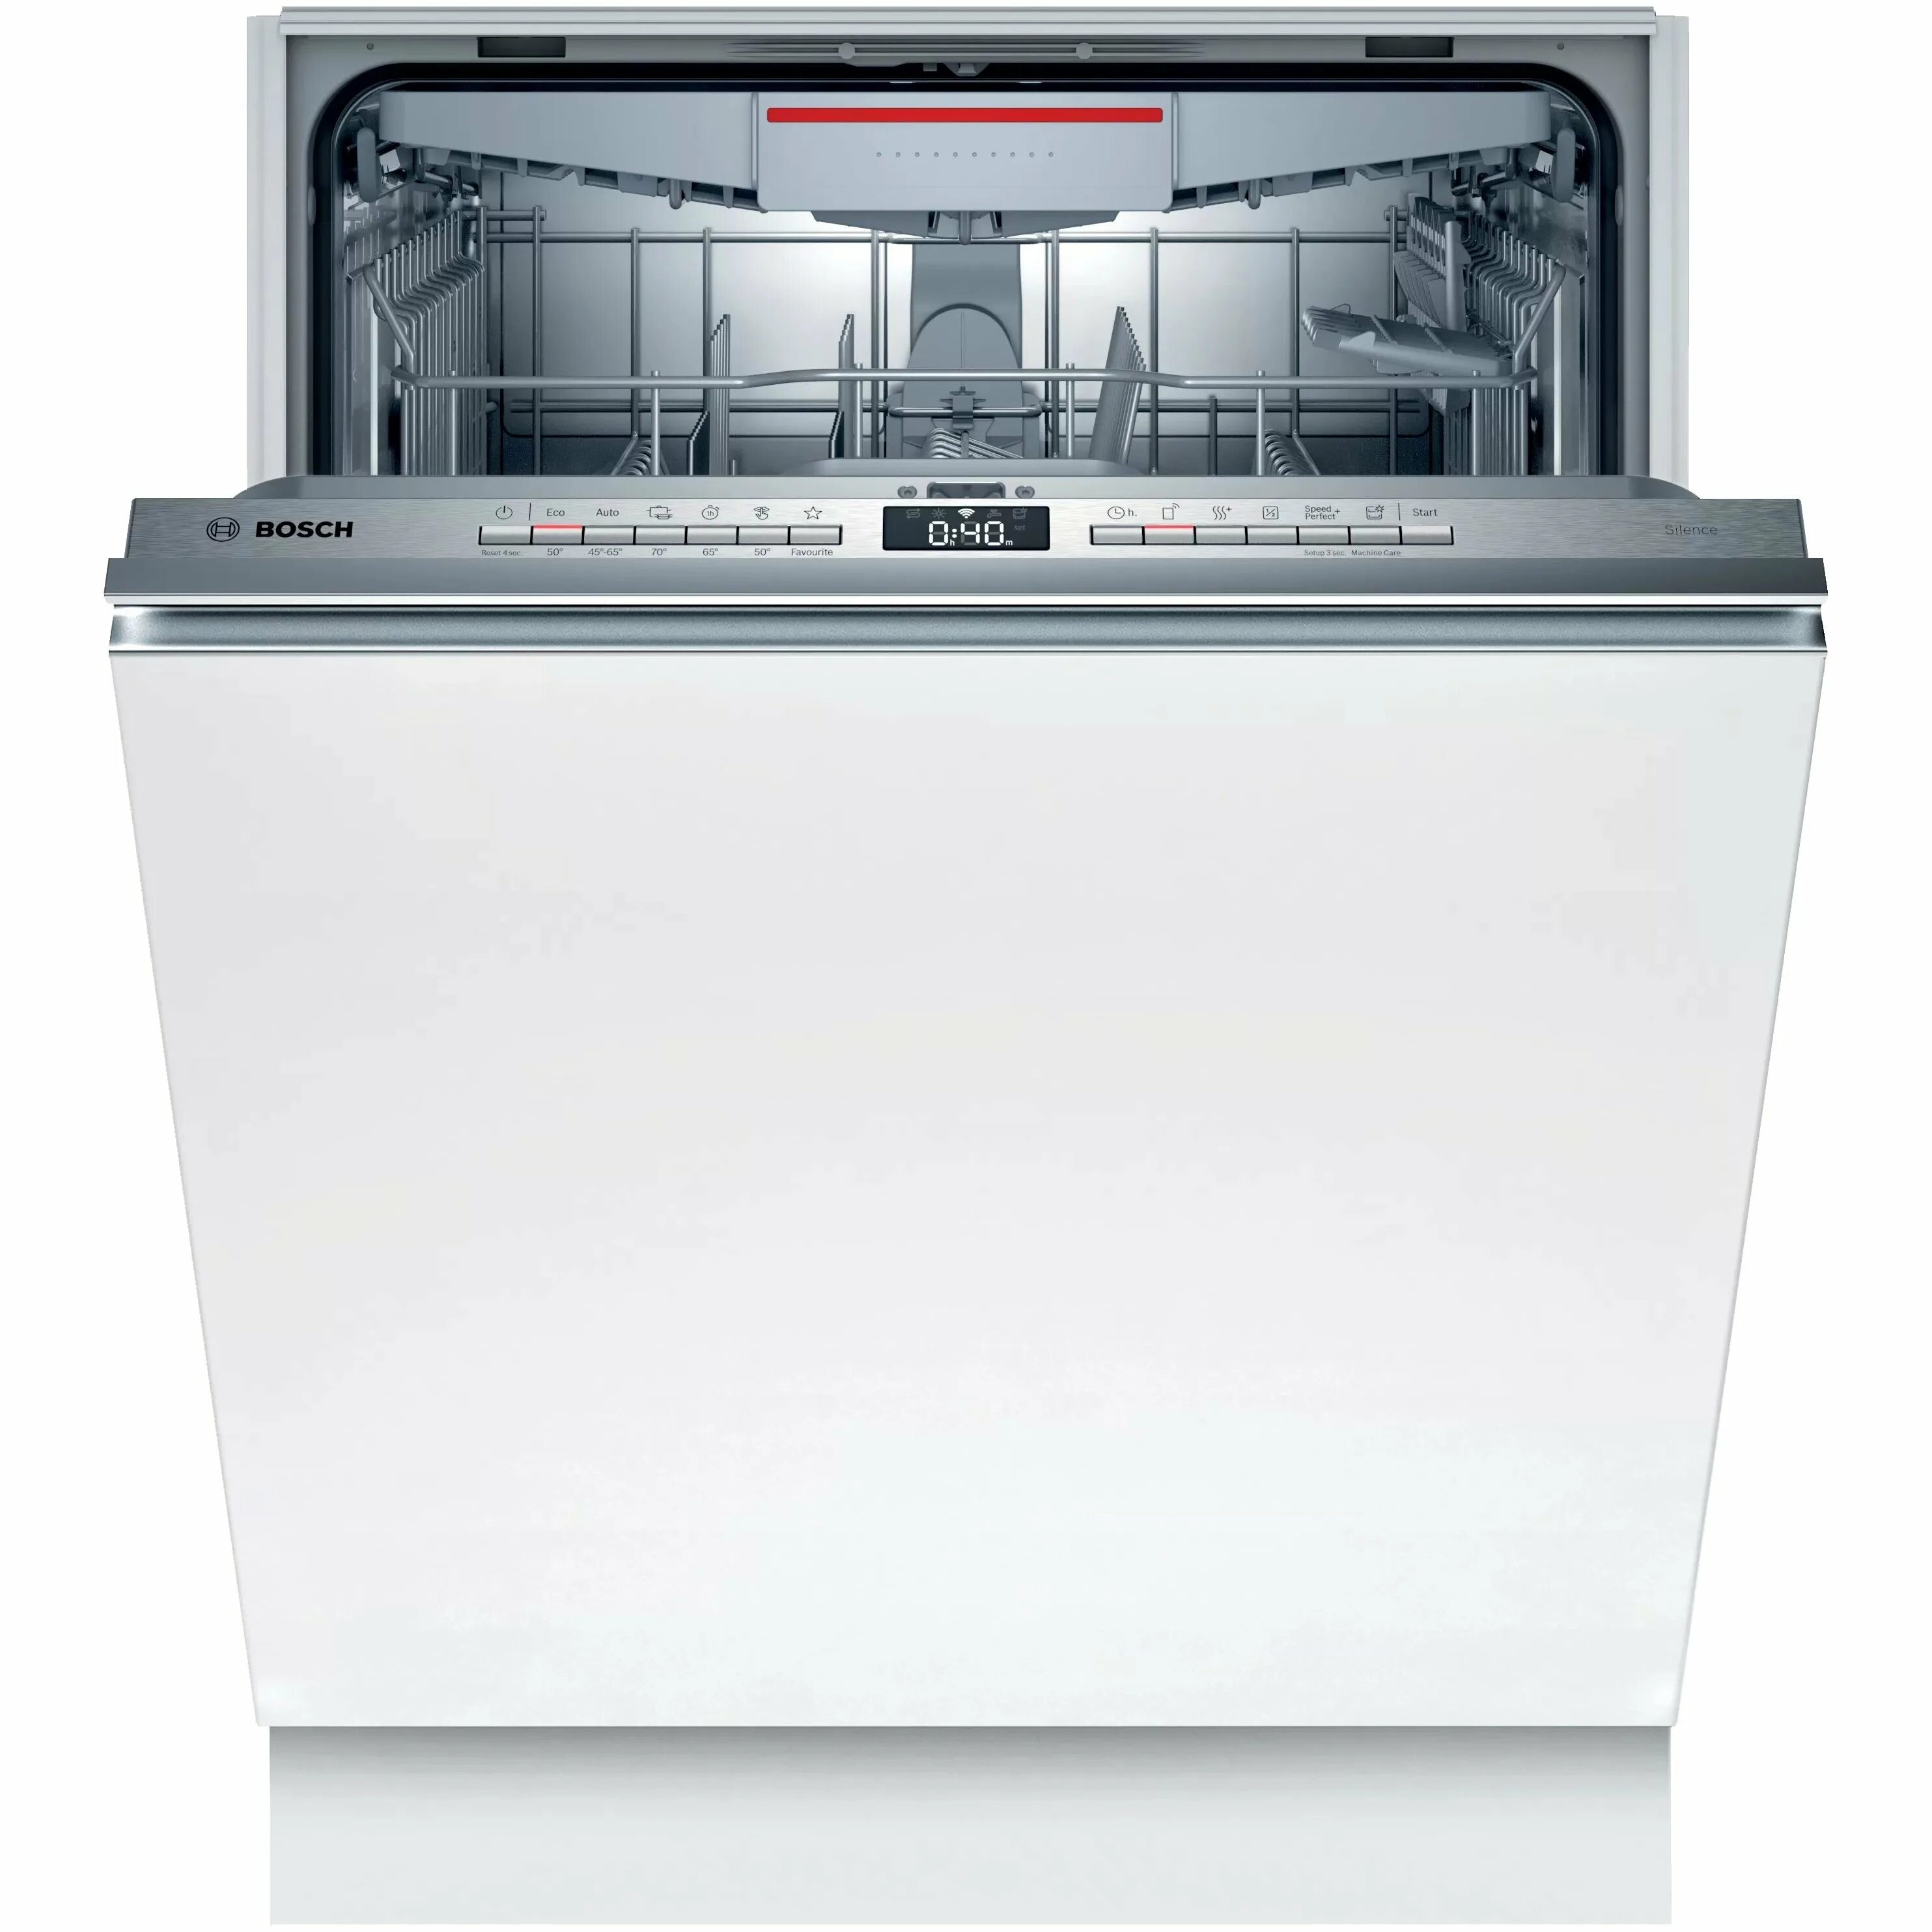 Посудомоечная машина Bosch SBV 45fx01 r. Посудомоечная машина Bosch встраиваемая spv6hmx2mr. Встраиваемая посудомоечная машина 60 см Bosch serie|4 sgv4hmx3fr. Встраиваемая посудомоечная машина Bosch srv2ikx1cr.